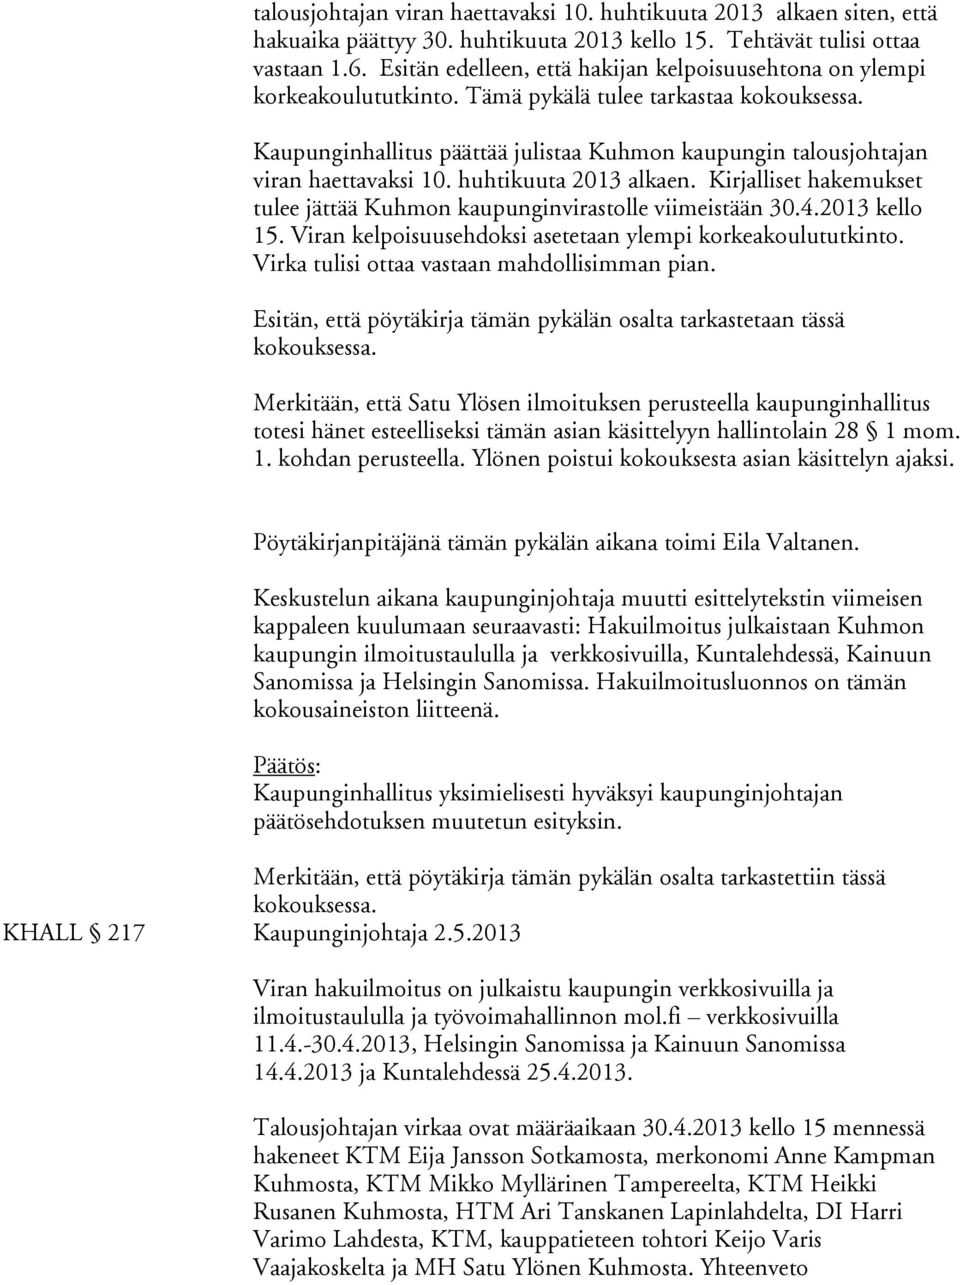 huhtikuuta 2013 alkaen. Kirjalliset hakemukset tulee jättää Kuhmon kaupunginvirastolle viimeistään 30.4.2013 kello 15. Viran kelpoisuusehdoksi asetetaan ylempi korkeakoulututkinto.